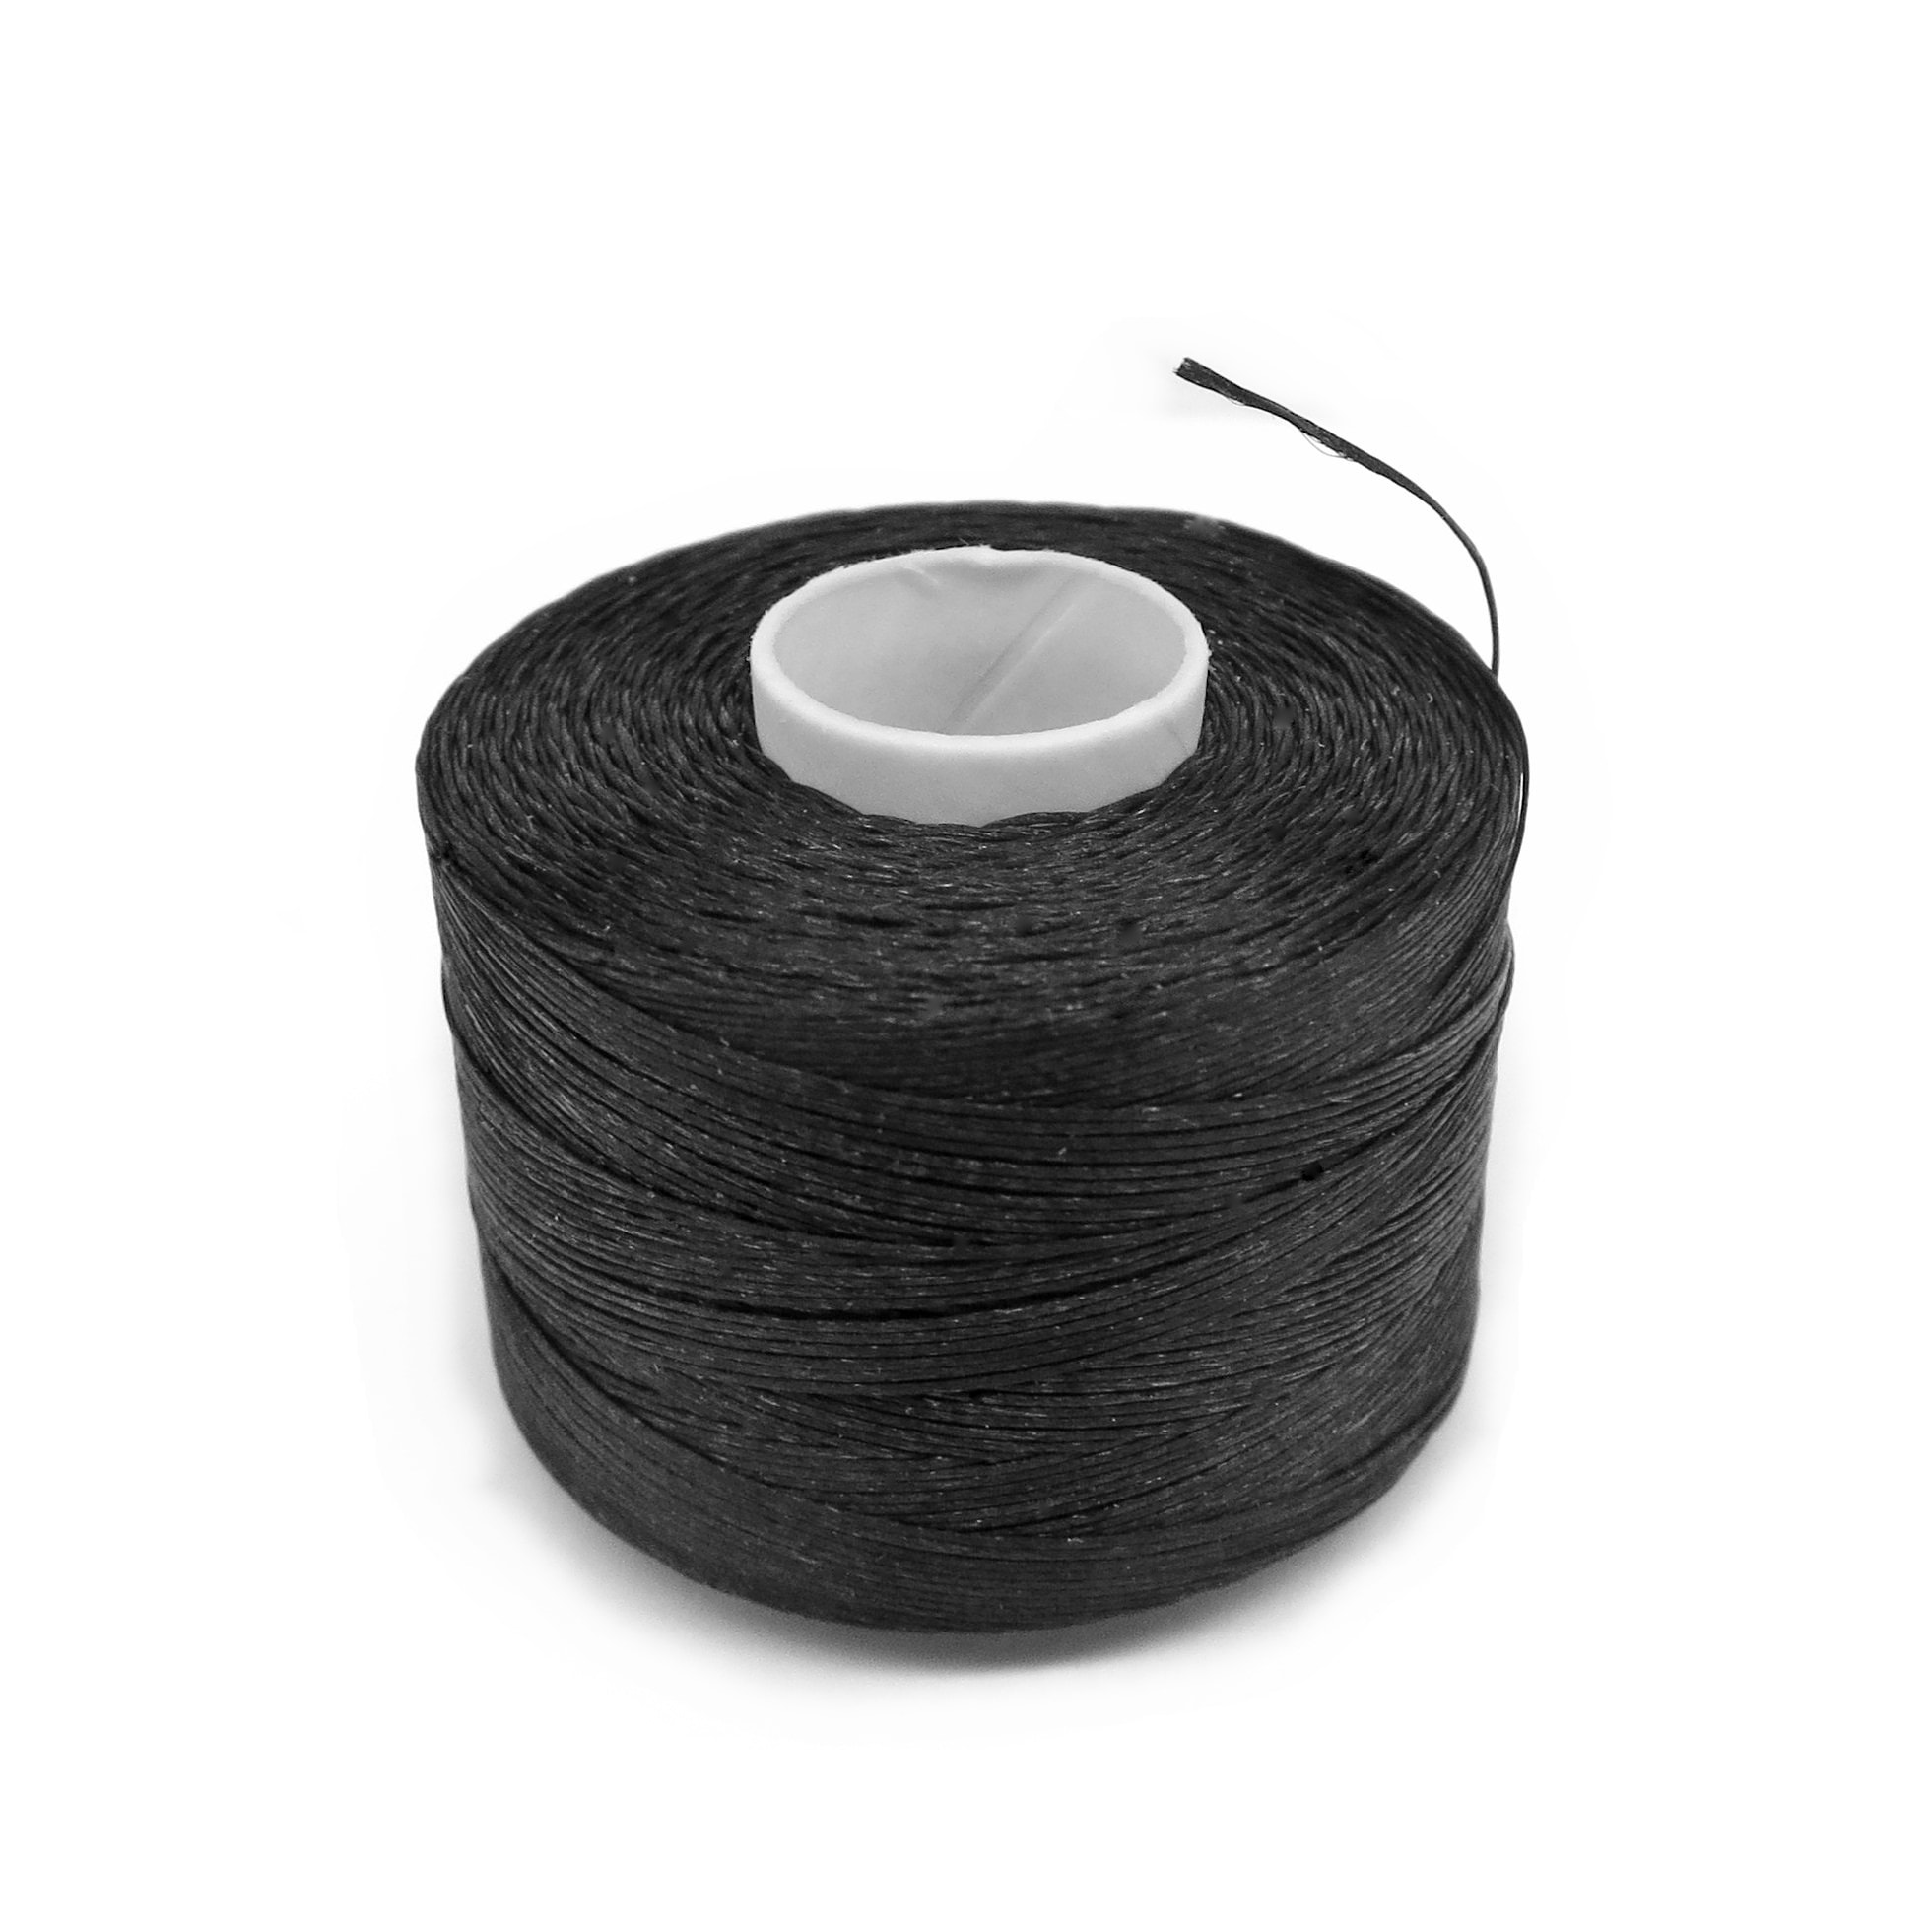 White Nylon Beading Thread, Thread for Beadwork